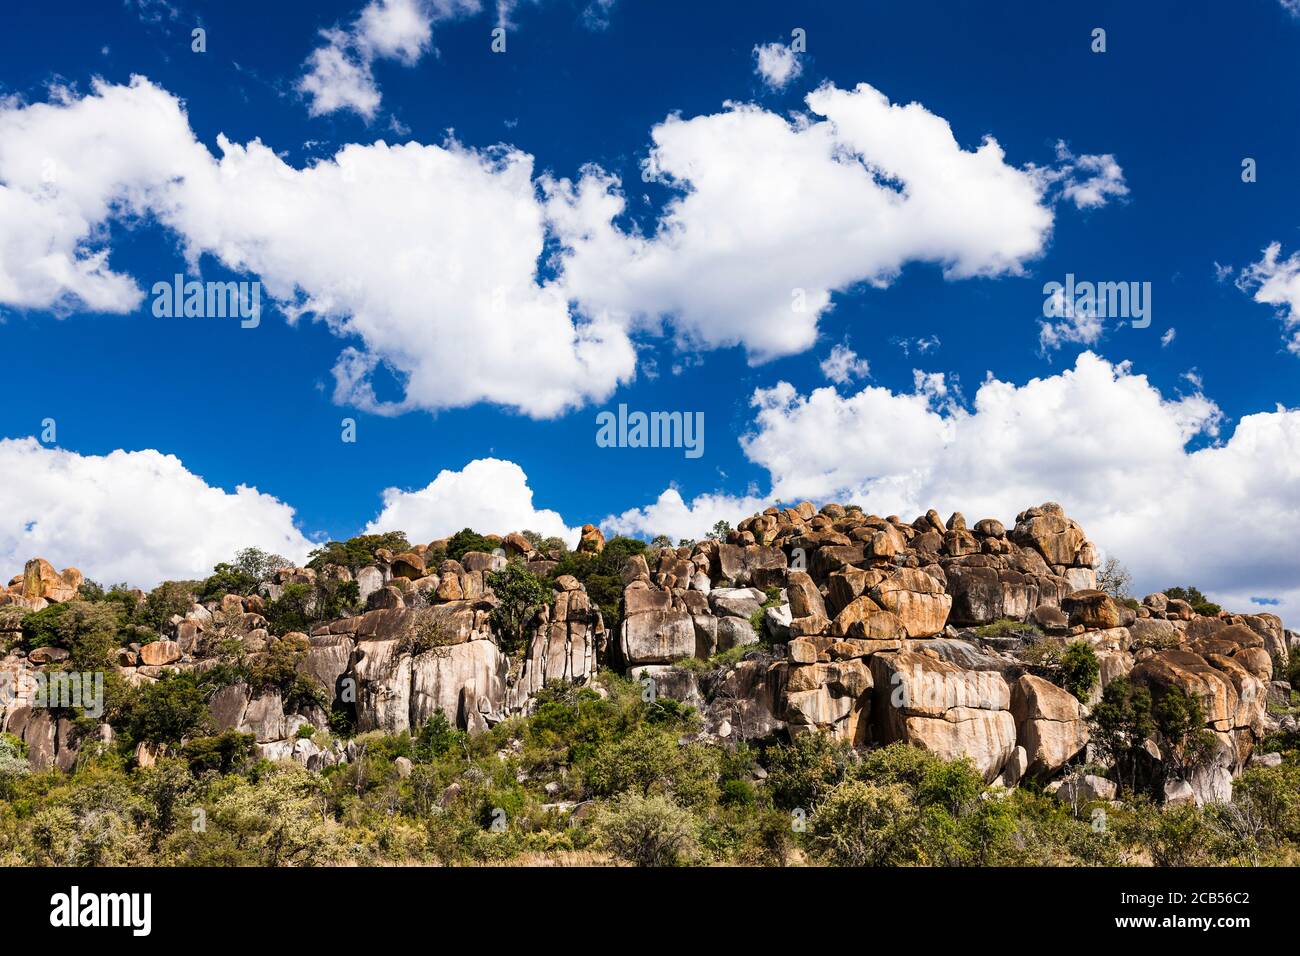 Collines de Matobo, formations rocheuses naturelles spectaculaires, art rupestre, parc national de Matobo, banlieue de Bulawayo, Matabeleland Sud, Zimbabwe, Afrique Banque D'Images